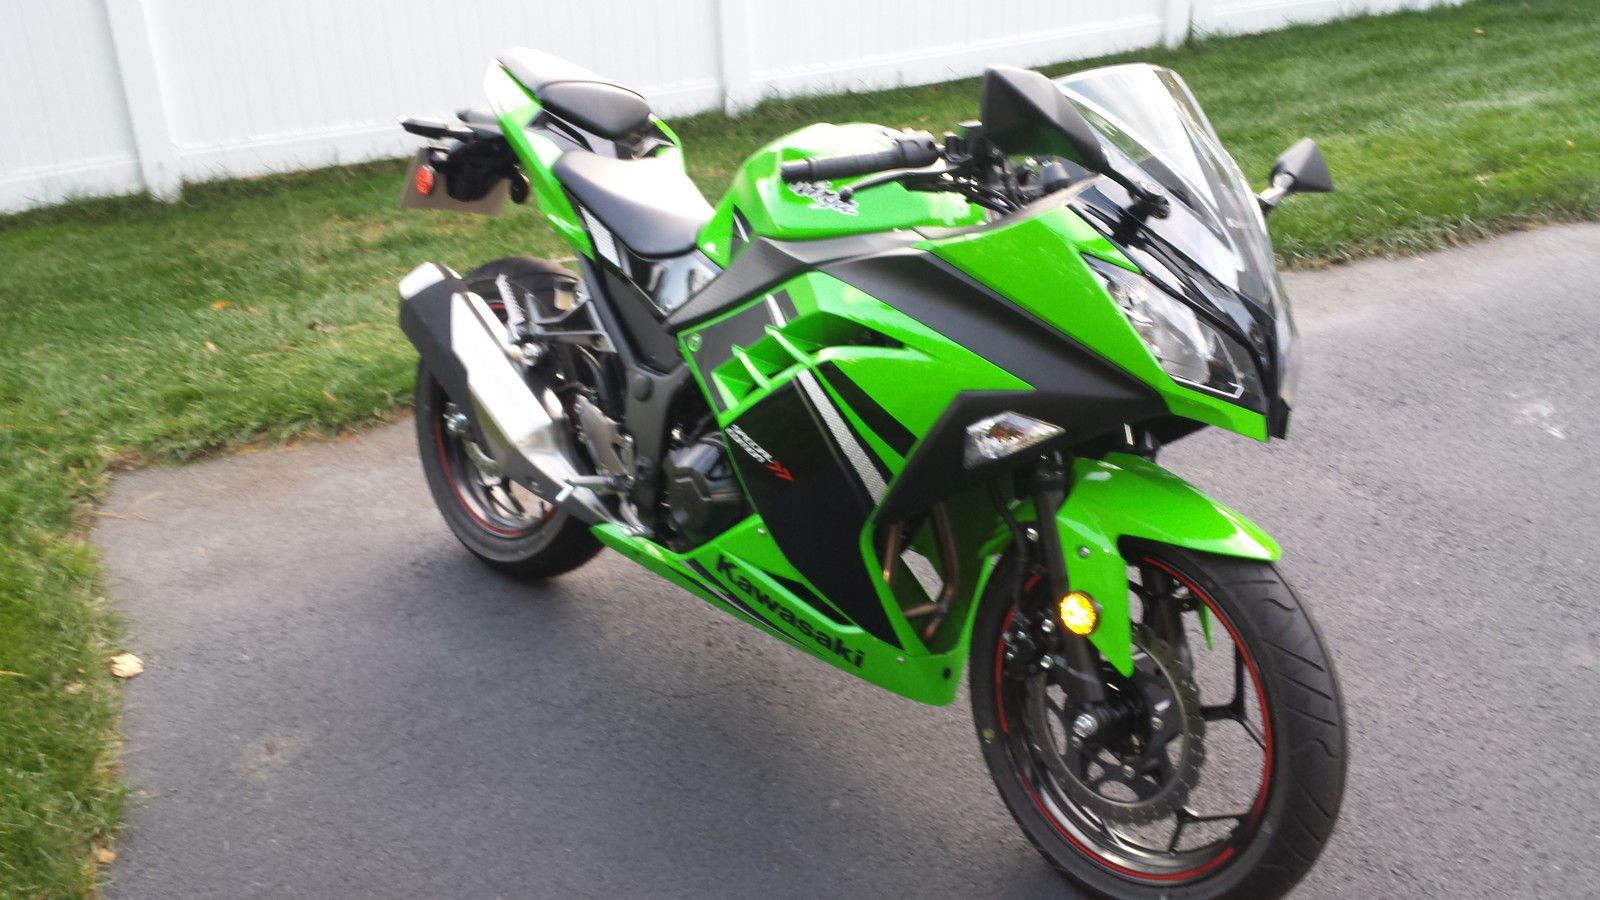 2014 Kawasaki Ninja 300 Green